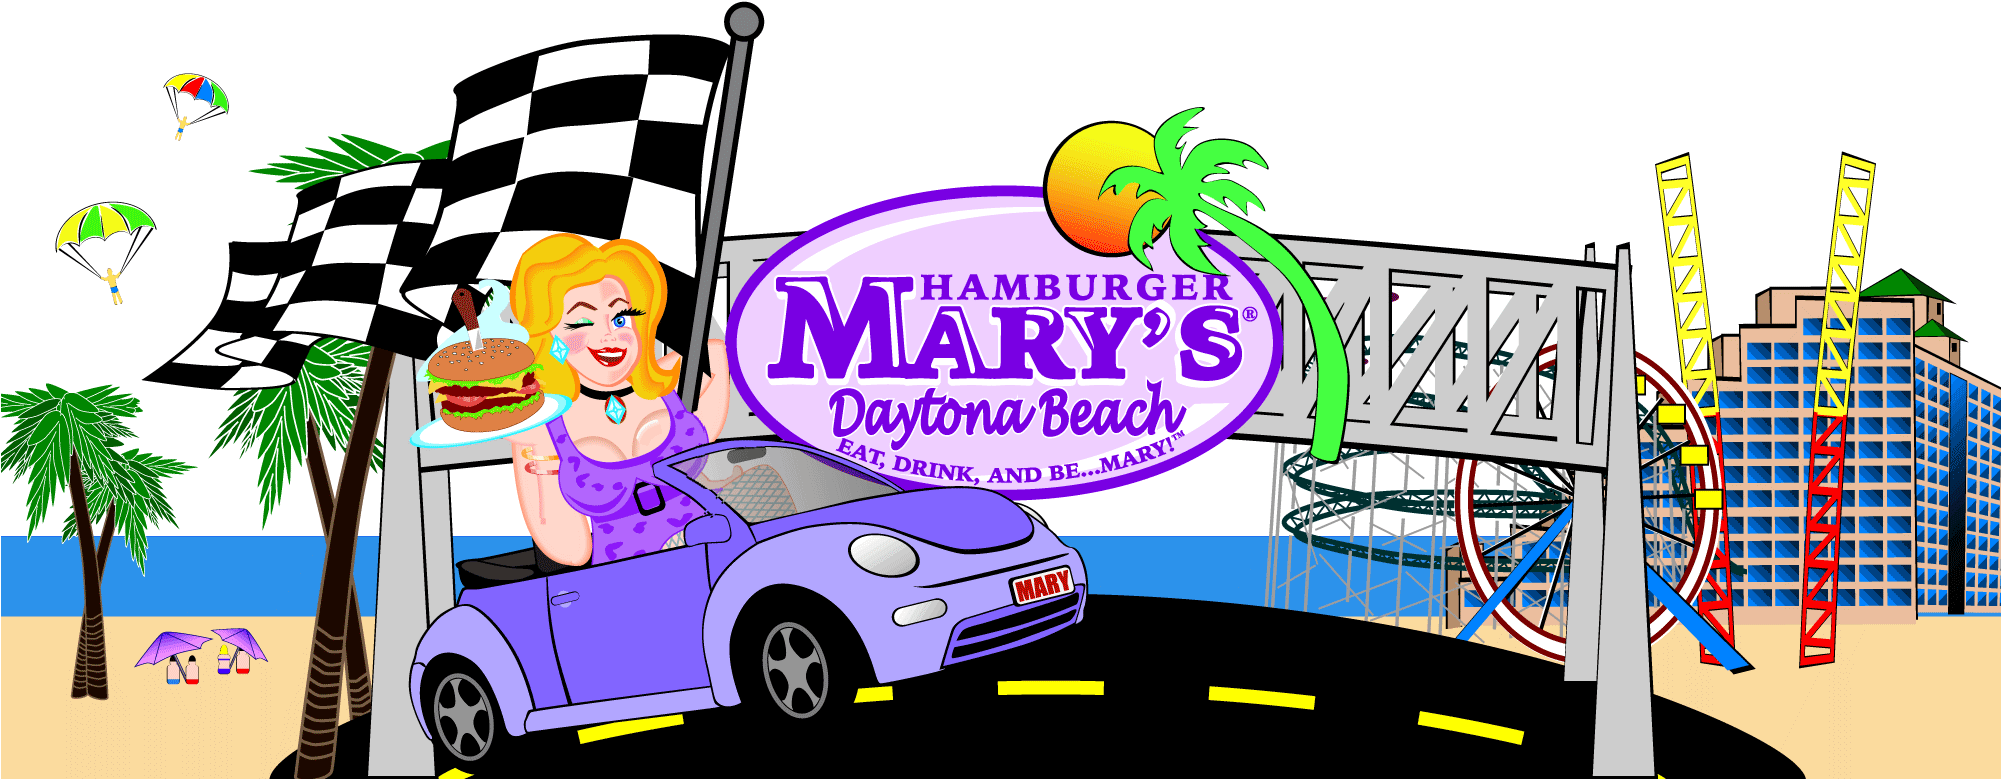 Hamburger Marys Daytona Beach Skyline - Hamburger Mary's Daytona Beach Clipart (2000x900), Png Download